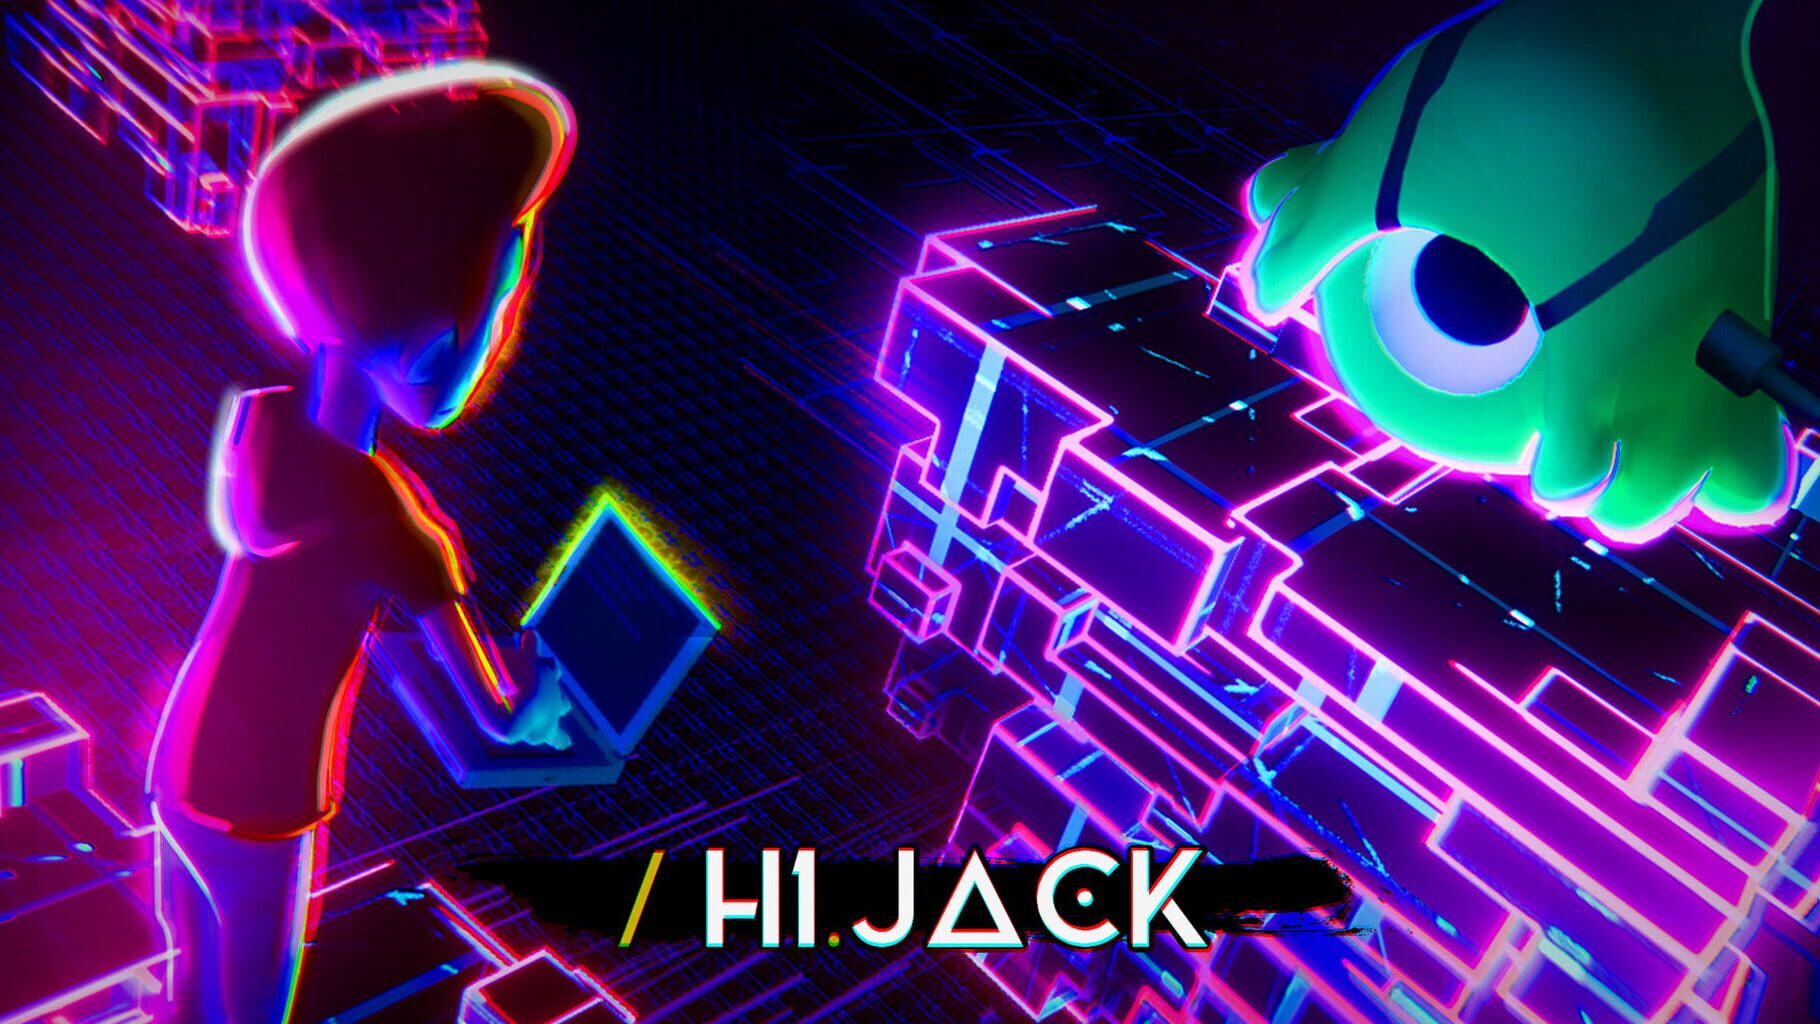 H1.Jack artwork